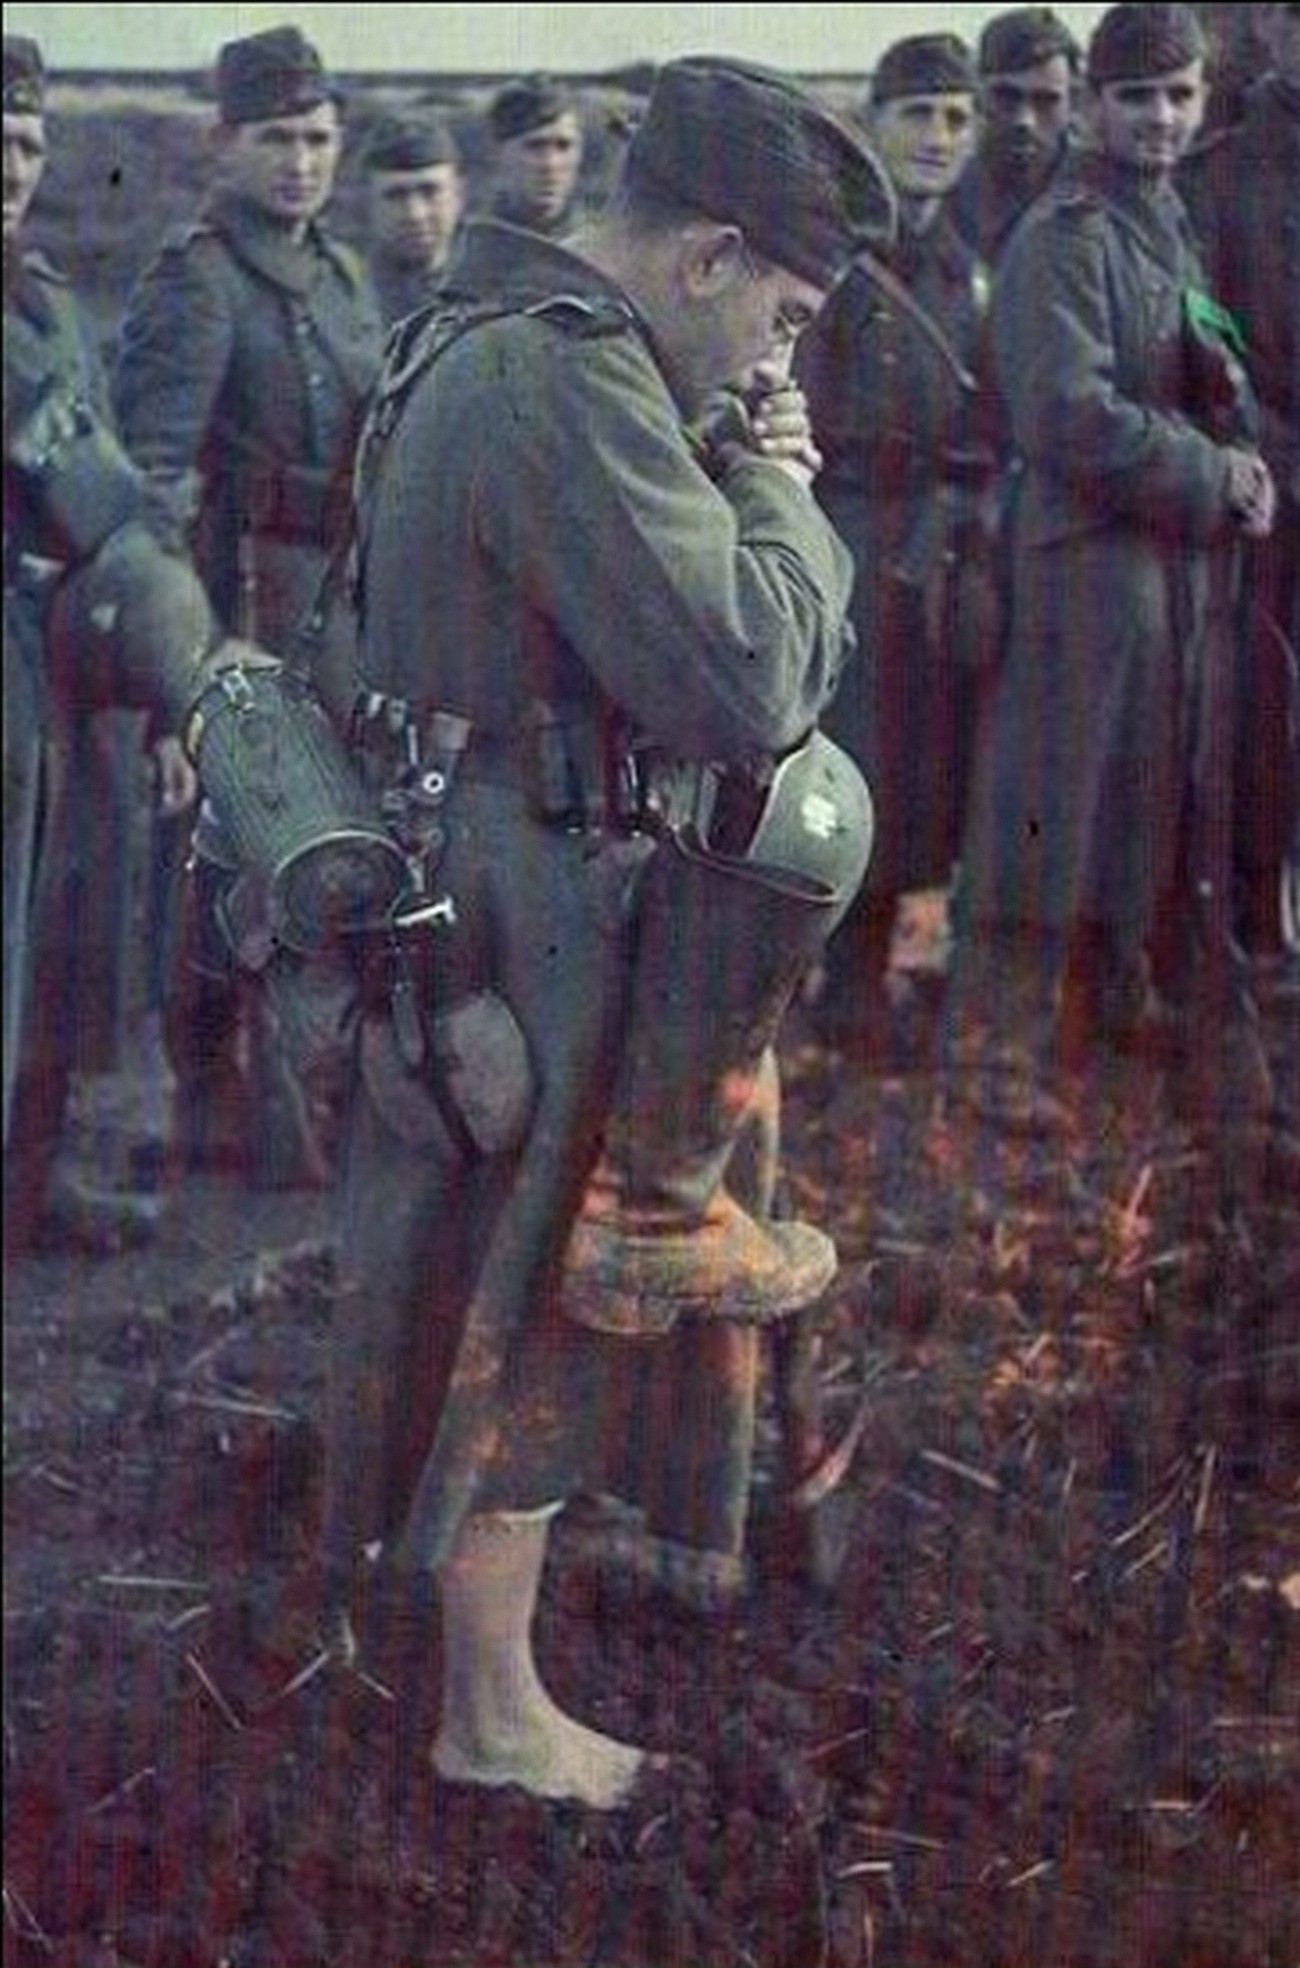 Фото Немецких Солдат В Цвете